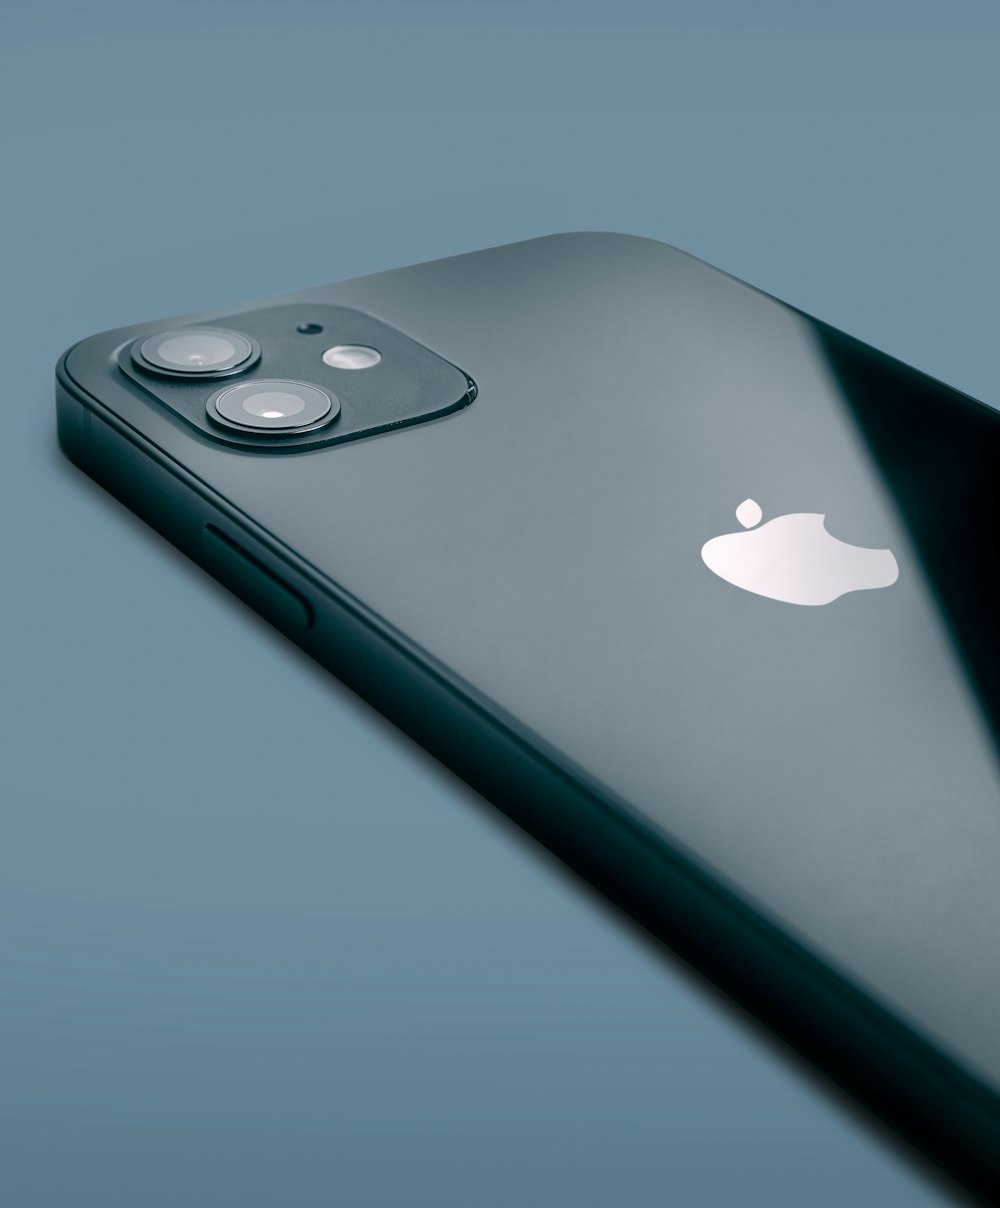 Silber iPhone 6 auf blauer Oberfläche